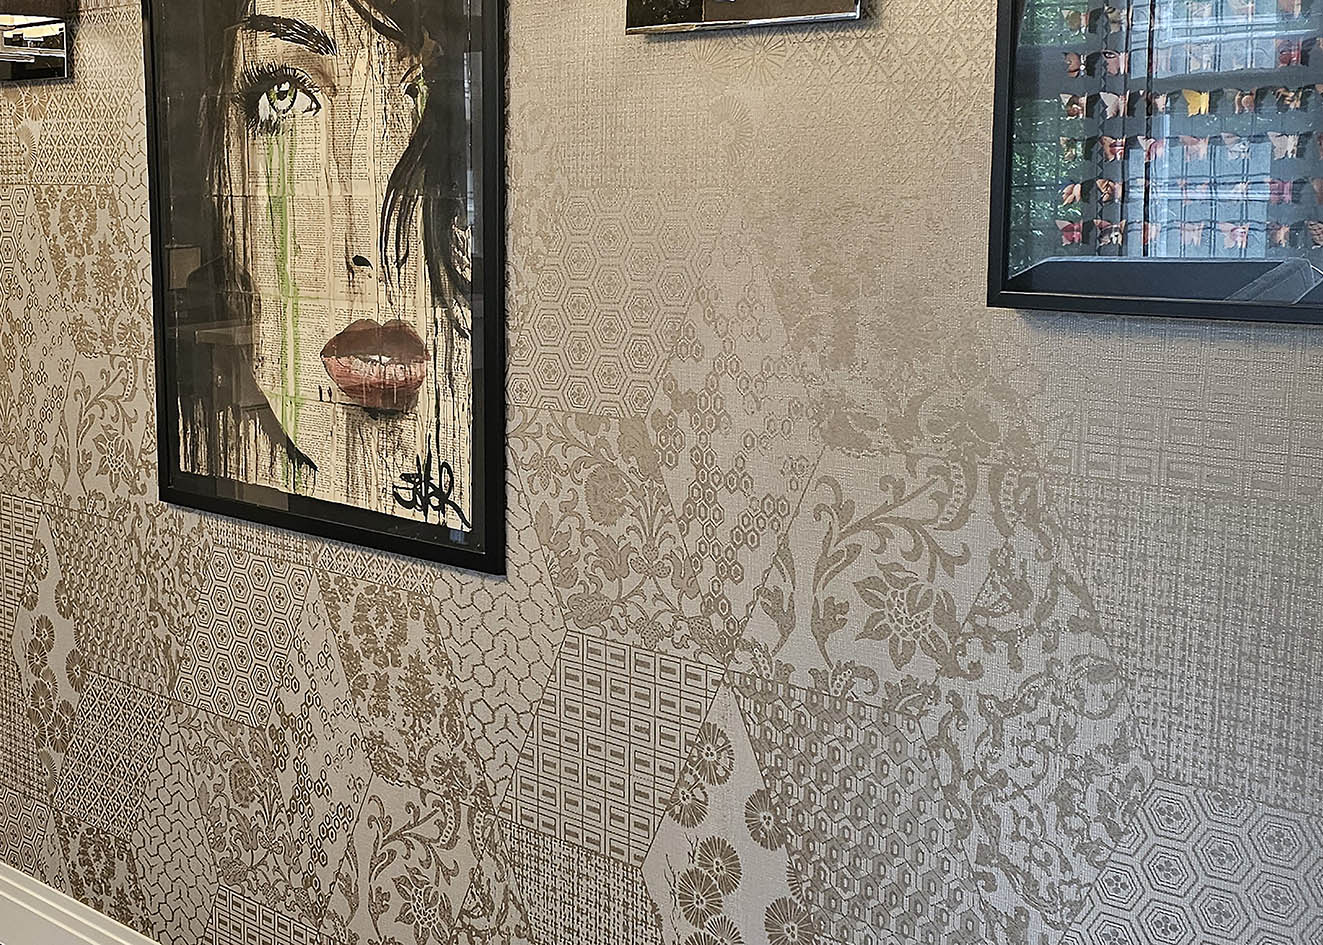 Arte wallpaper Revera Patch installed in Chelsea, London by Bluespec wallpaper specialists.